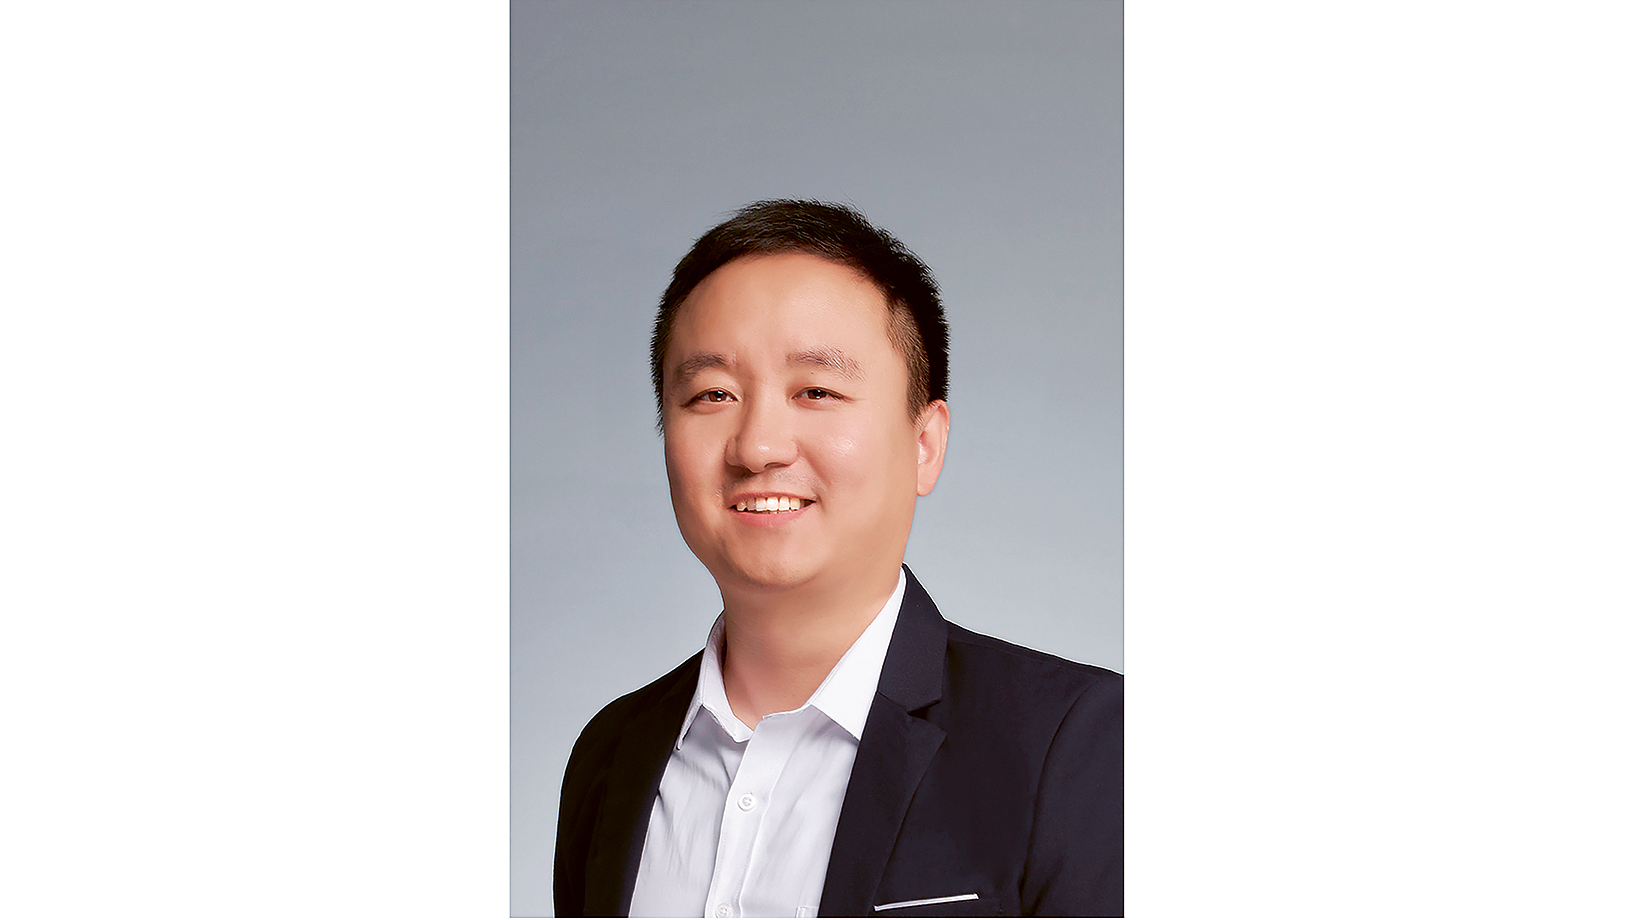 Ben Wang, Manager Software Development, 2020, Porsche AG